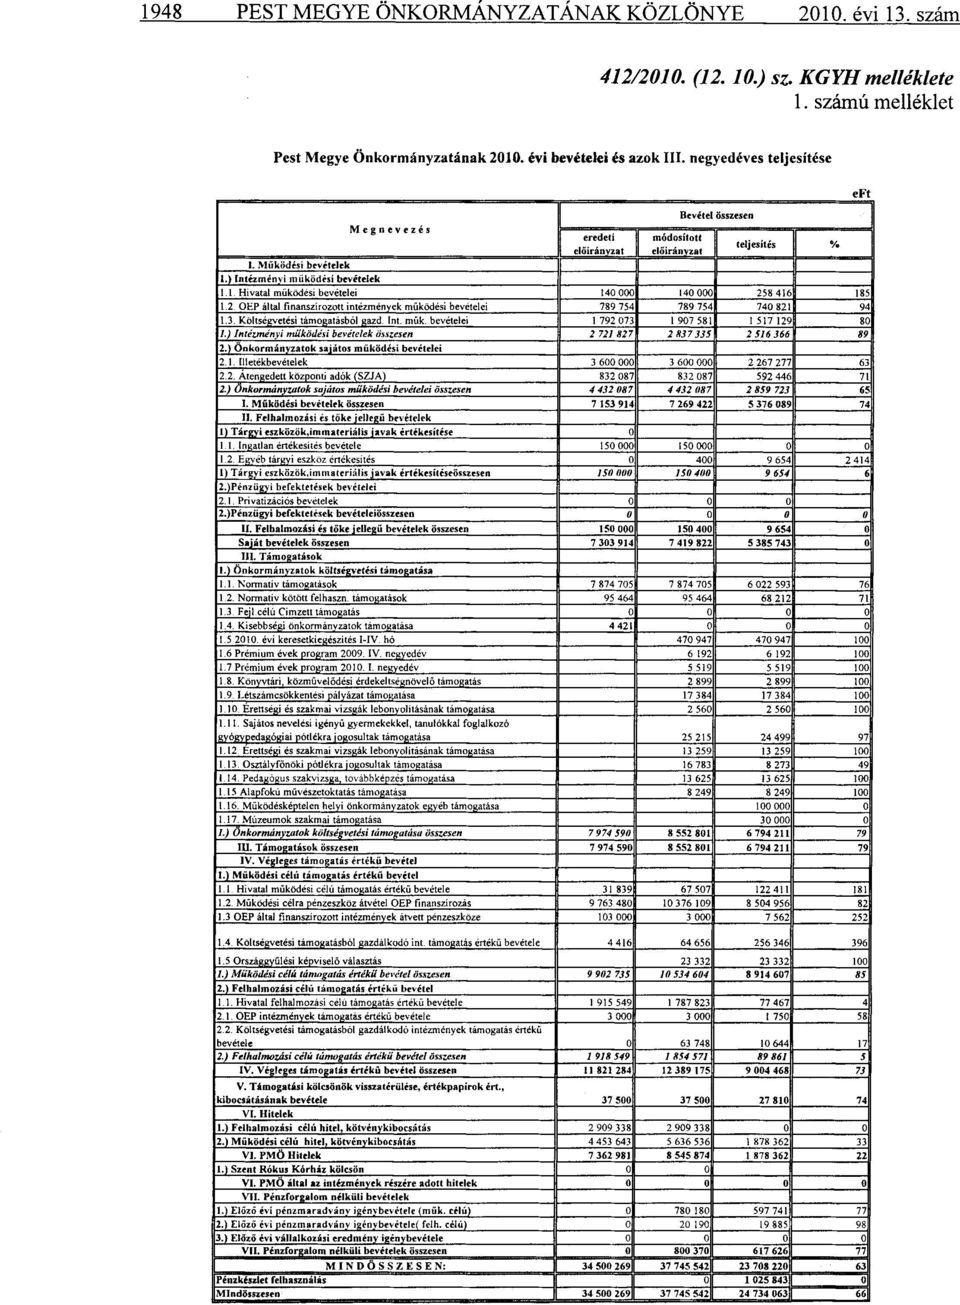 2. OEP által finanszírozott intézmények működési bevételei 789 754 789 754 740 8211 94 1.3. Költségvetési támogatásból gazd. Int. műk. bevételei 1 792 073 1 907 581 1 517 129 80 1.